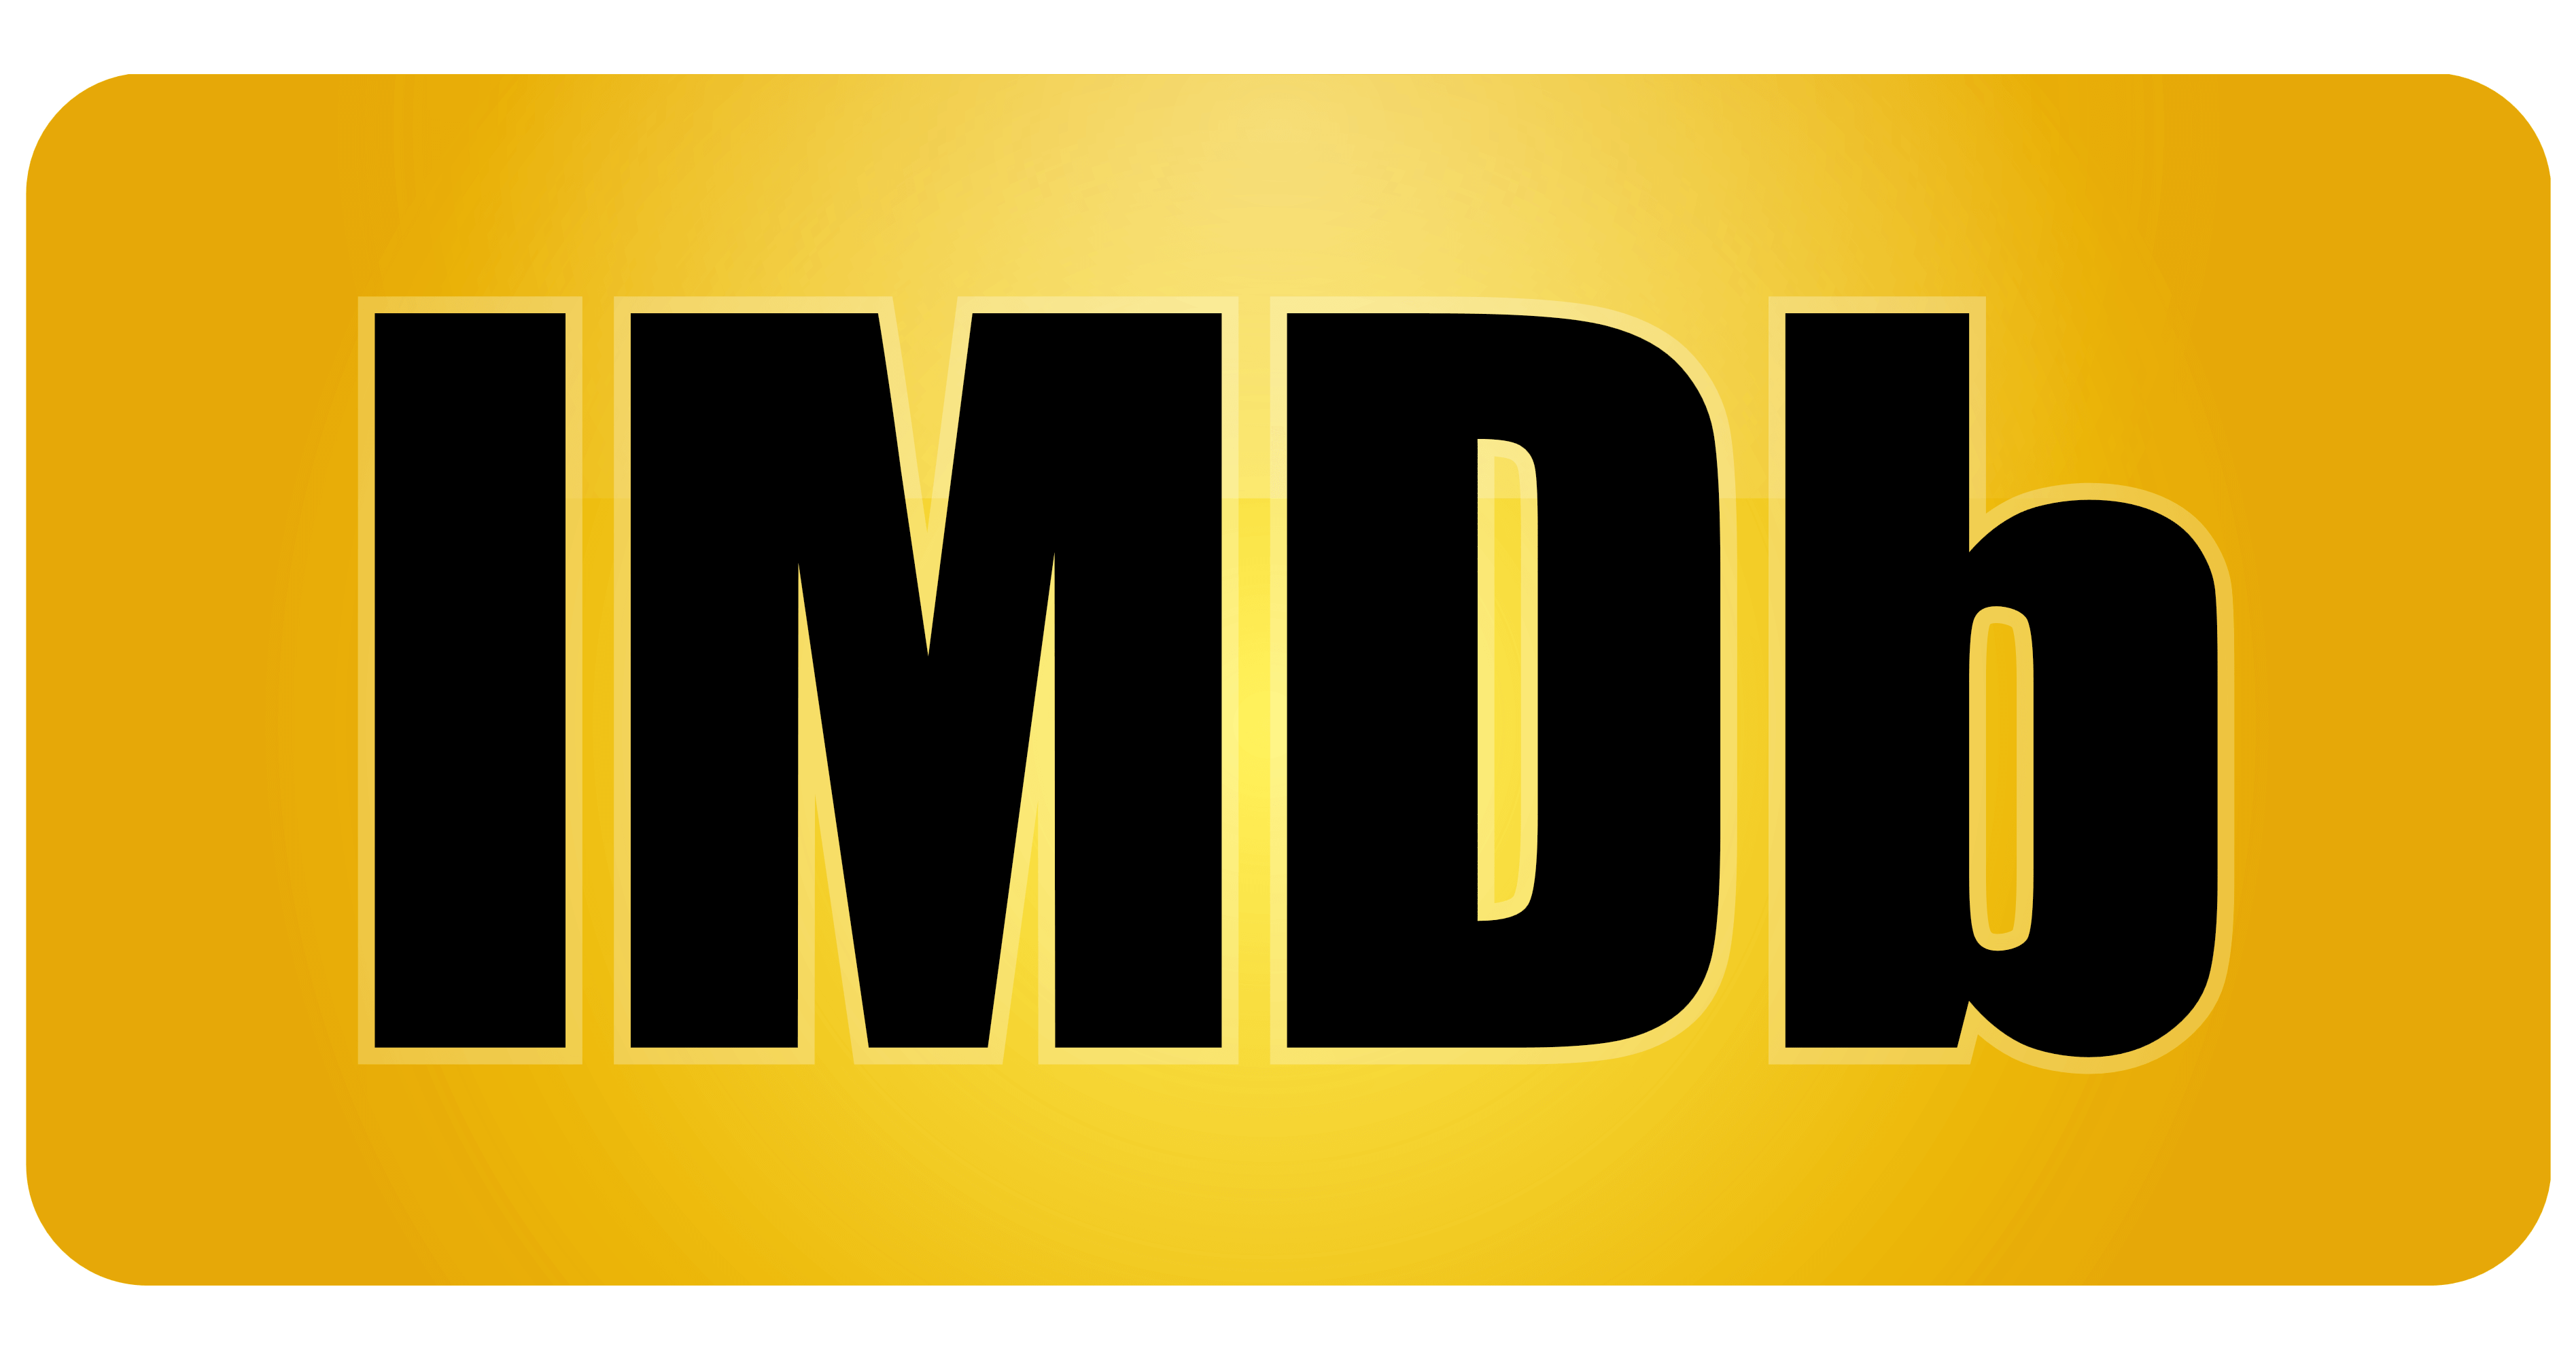 IMDb logo, logotype